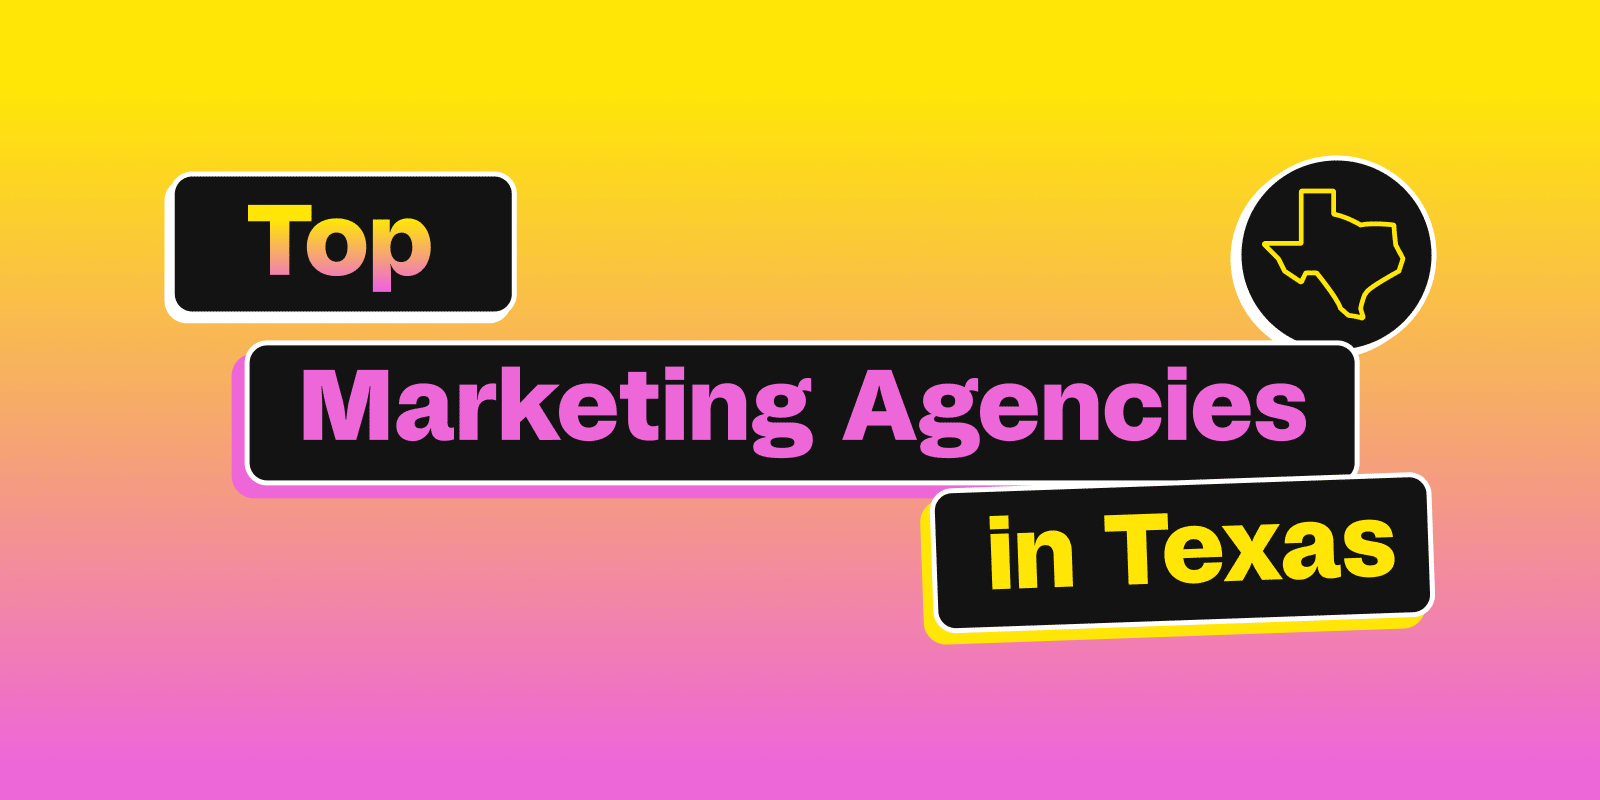 Top Marketing Agencies in Texas